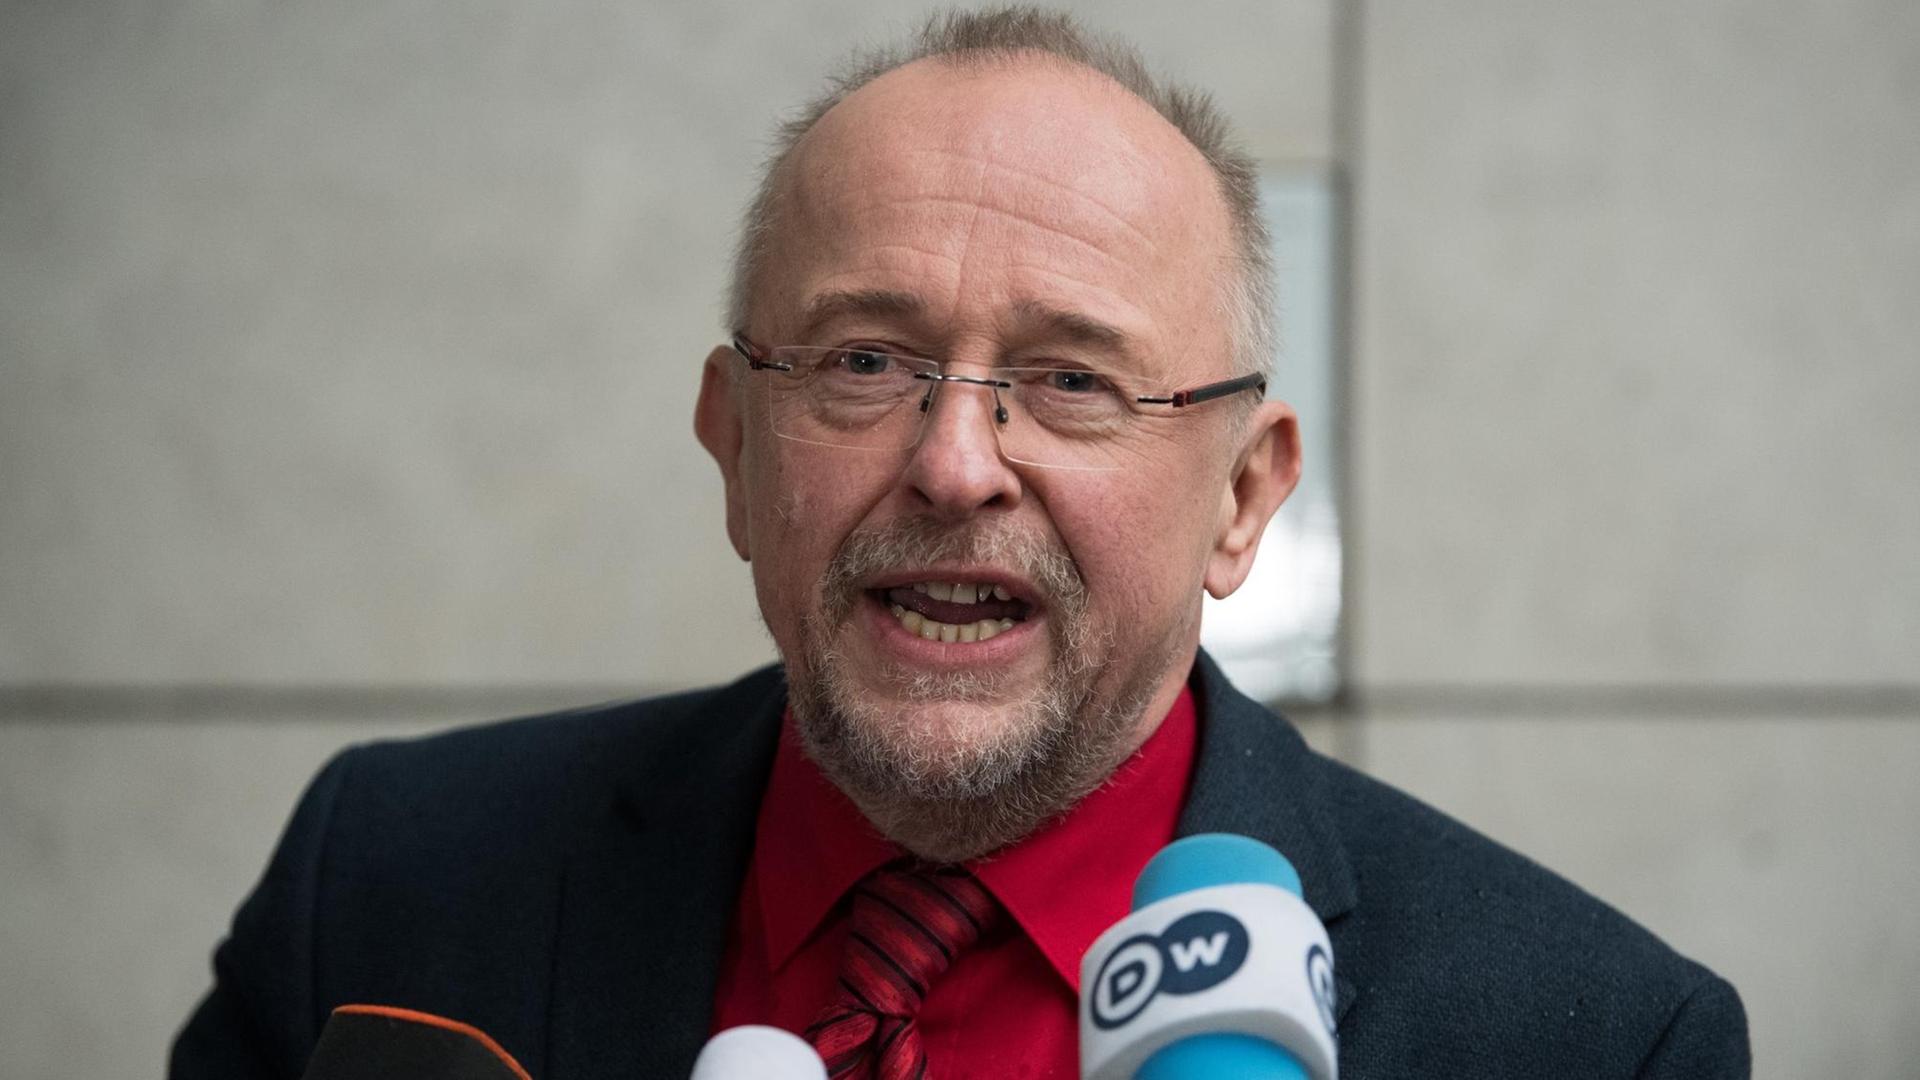 Der stellvertretende Fraktionsvorsitzende der SPD im Bundestag, Axel Schäfer, spricht vor Mikrofonen.